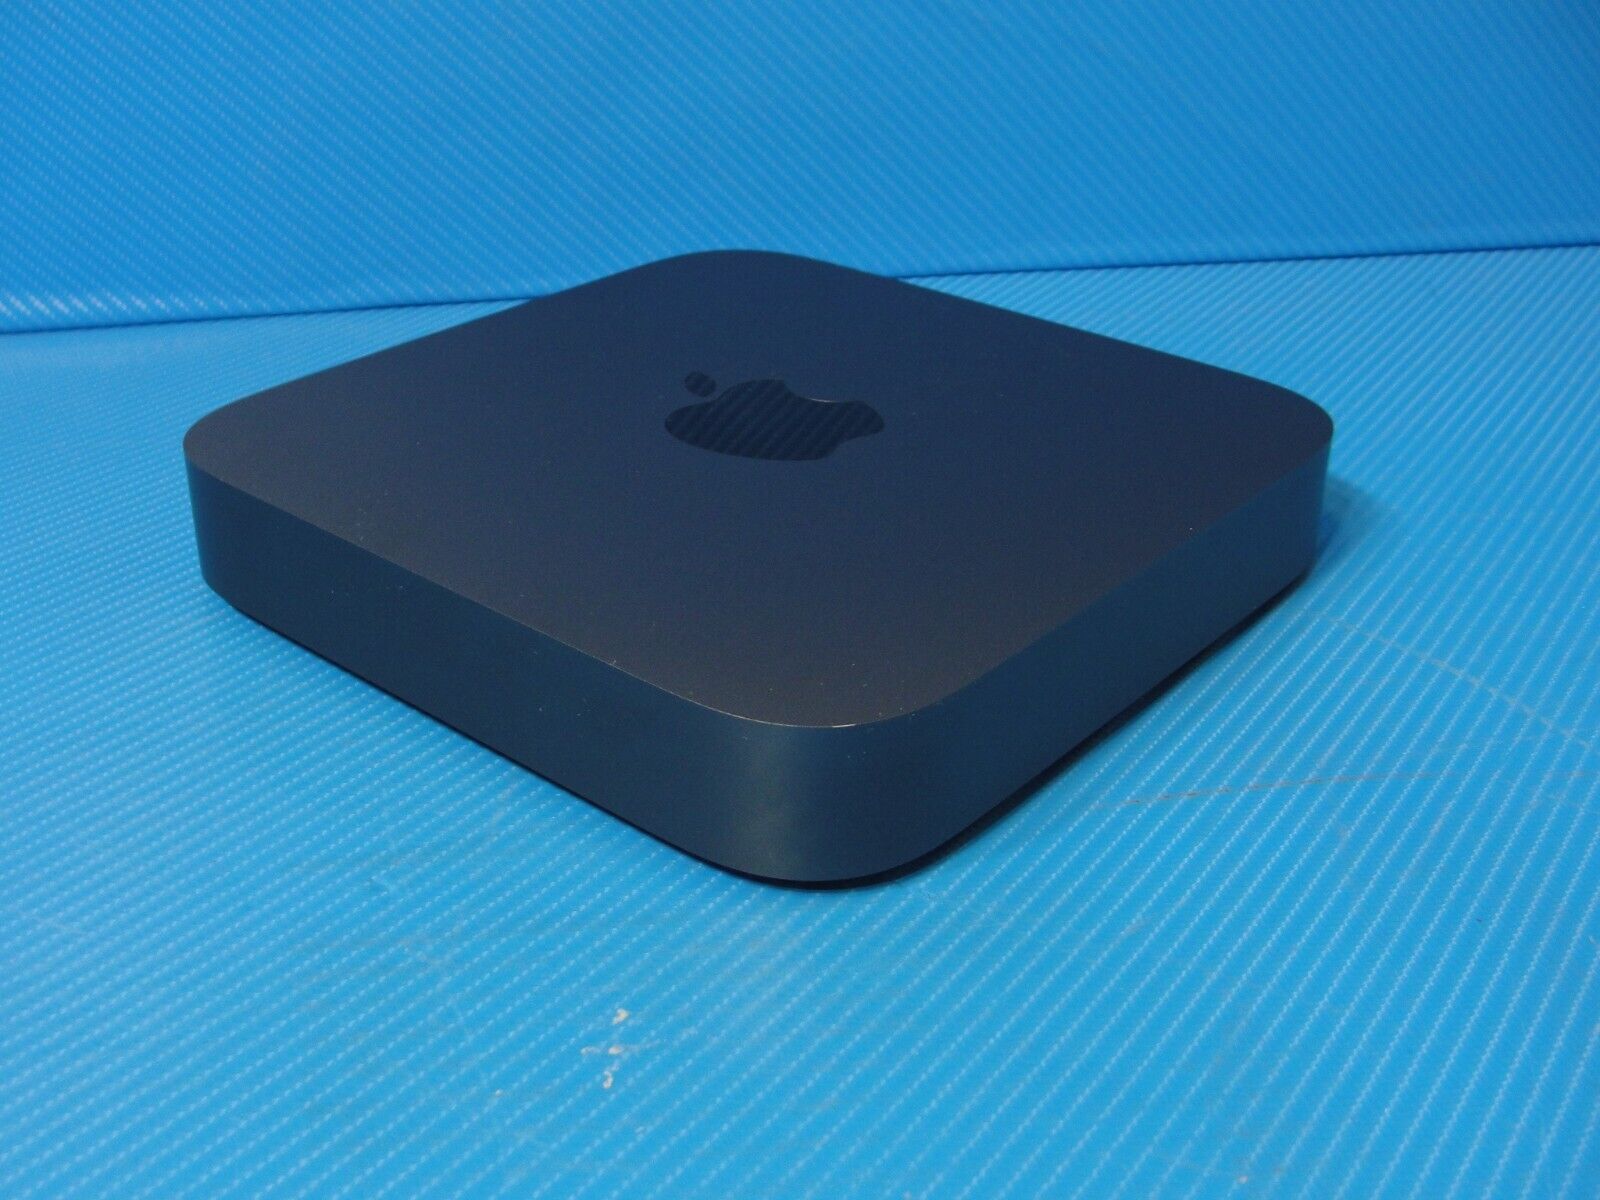 2018 - Apple Mac Mini - Intel Core i7-8700B 3.2GHz/16GB/256GB (Space Gray)